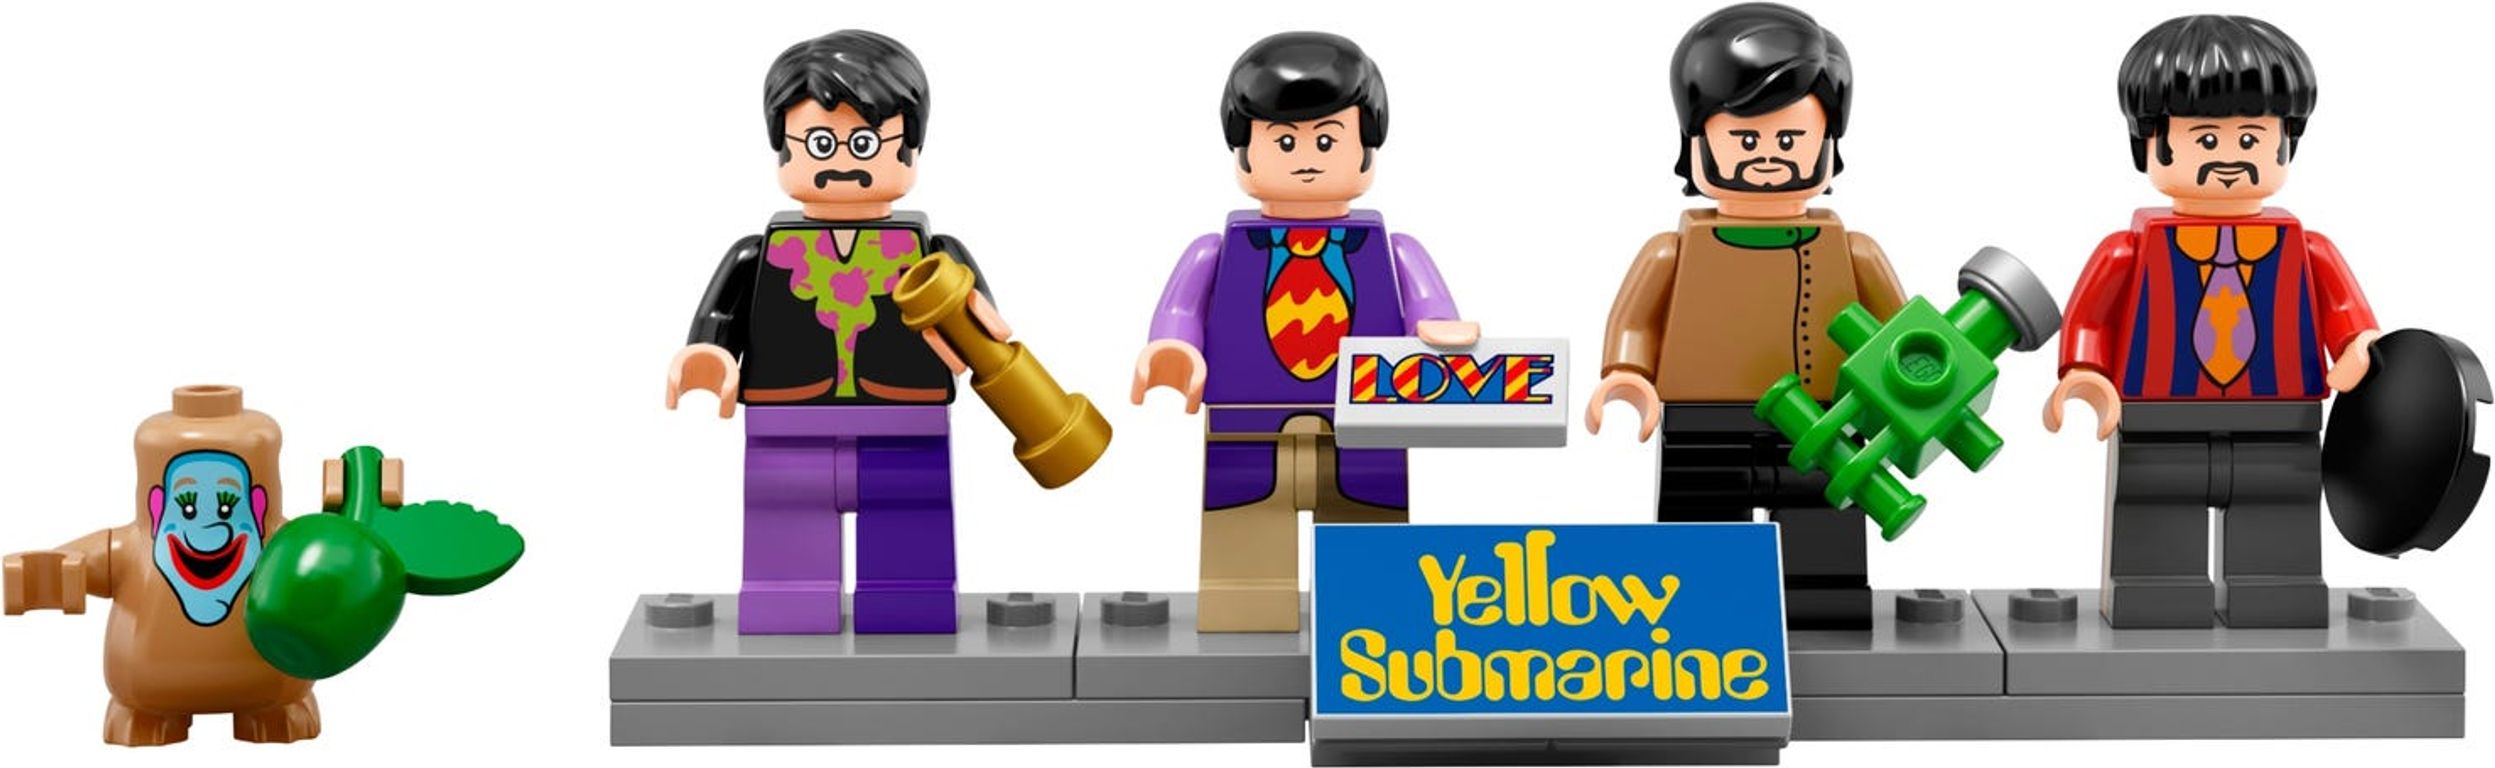 LEGO® Ideas Yellow Submarine minifigures